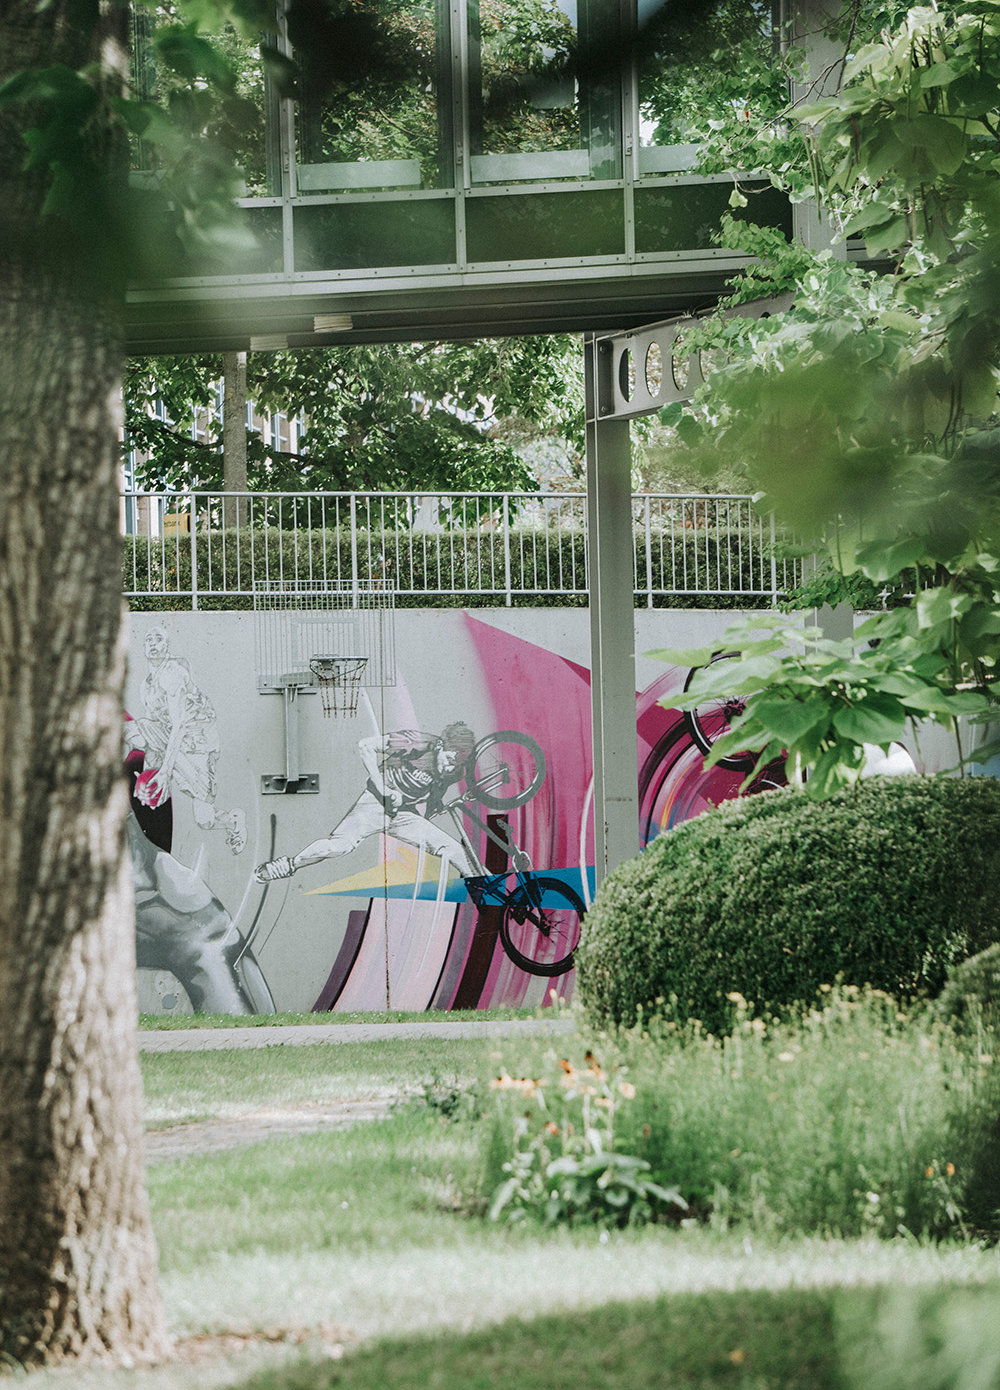 Ein grüner Firmengarten der Telekom AG mit Rasenfläche, Pflanzen und Gehölzen. Der Blick geht auf eine mit Graffiti bemalte Wand, an der ein Basketballkorb hängt.